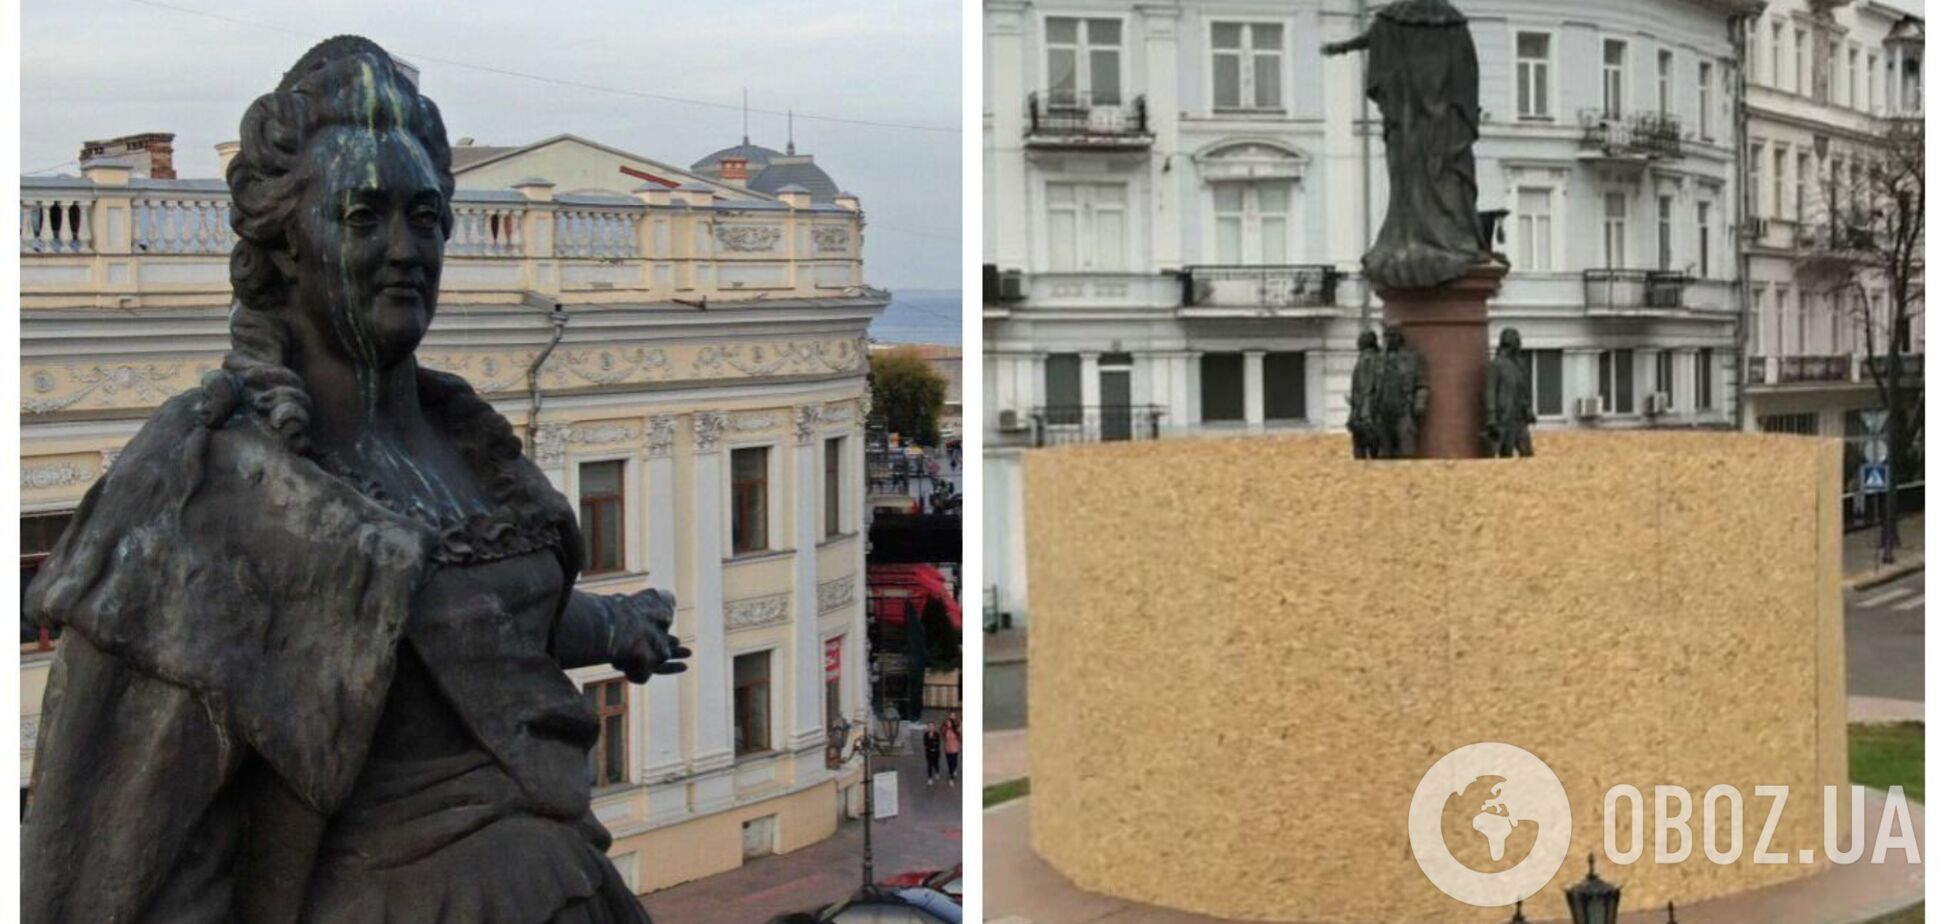 Одеська міська рада підтримала рішення про демонтаж пам’ятника Катерині II і Суворову